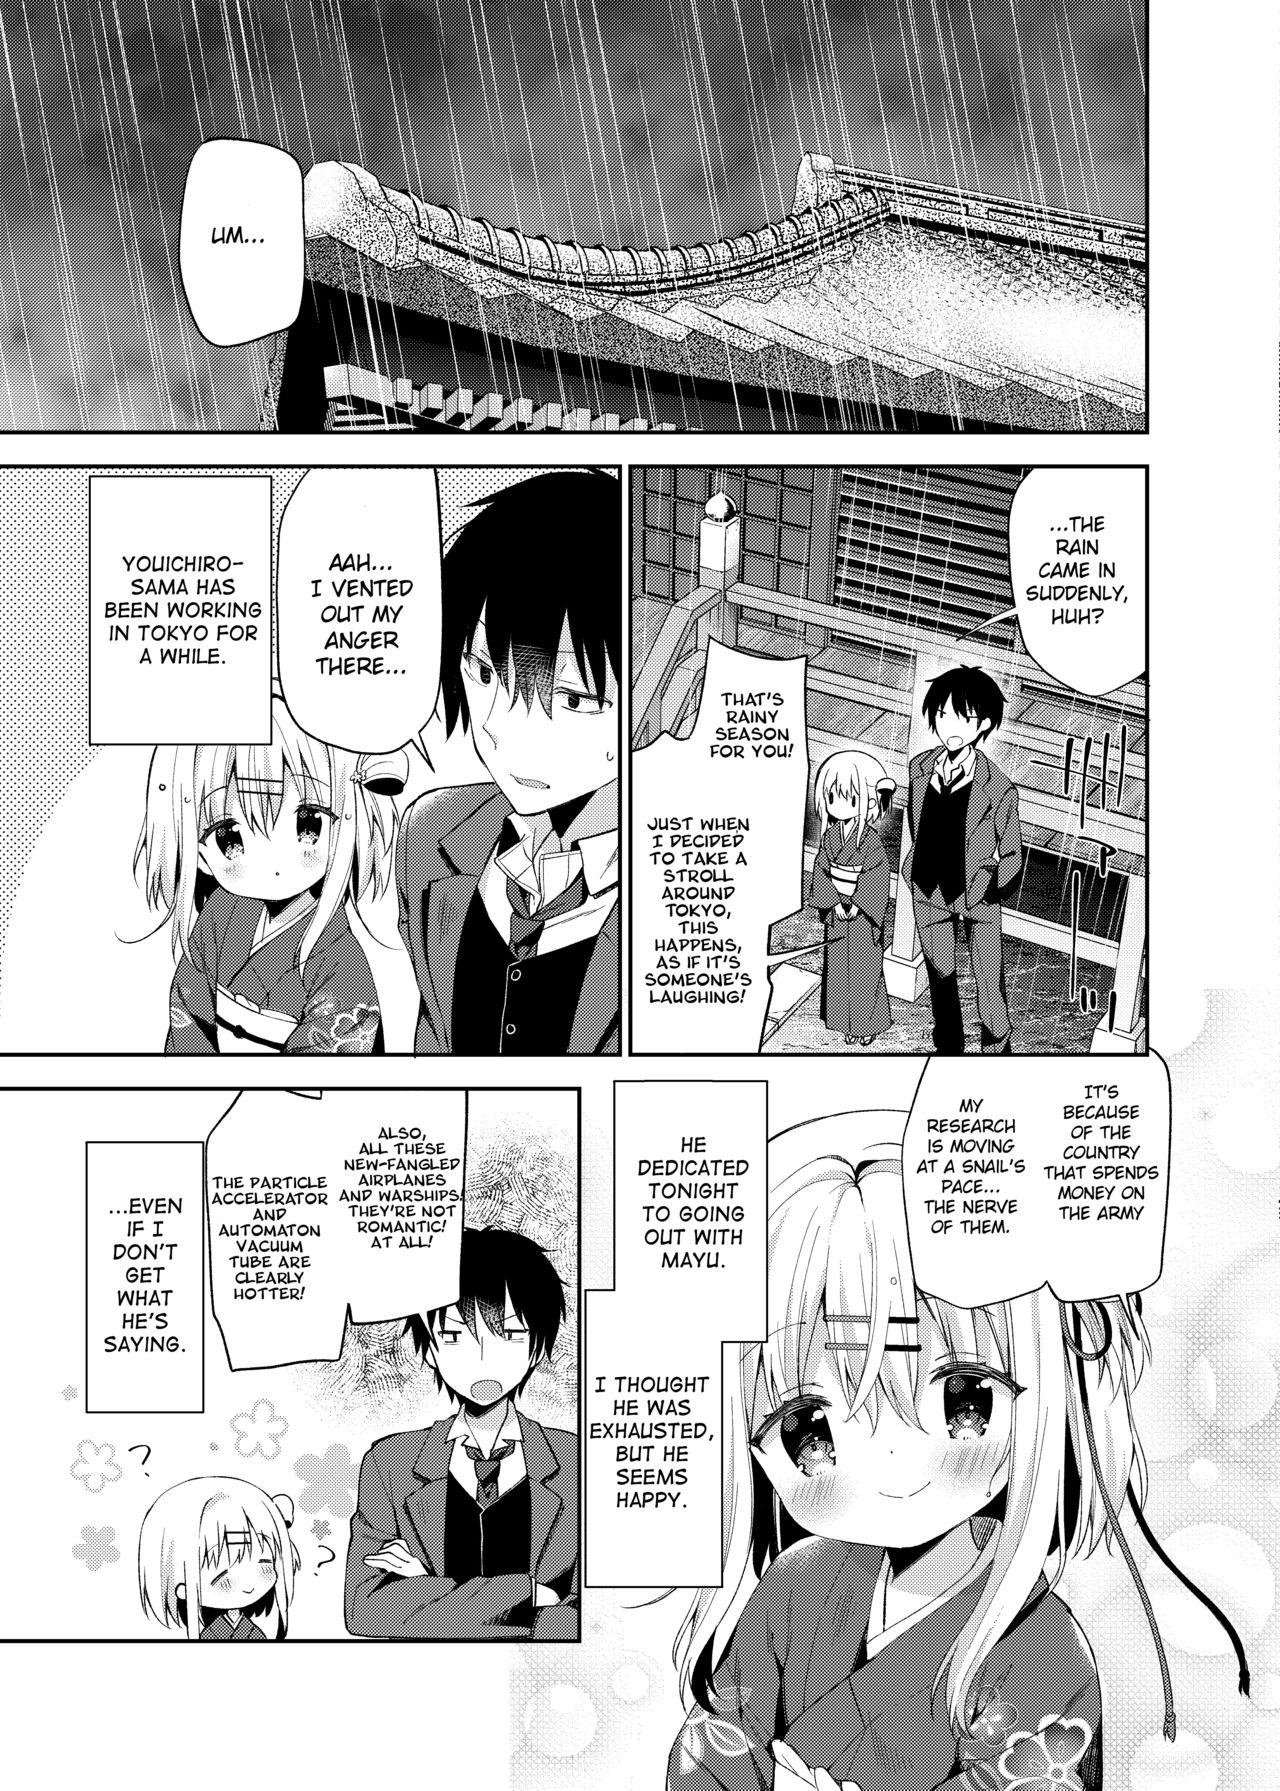 Safada Onnanoko no Mayu 3 - Original First - Page 10